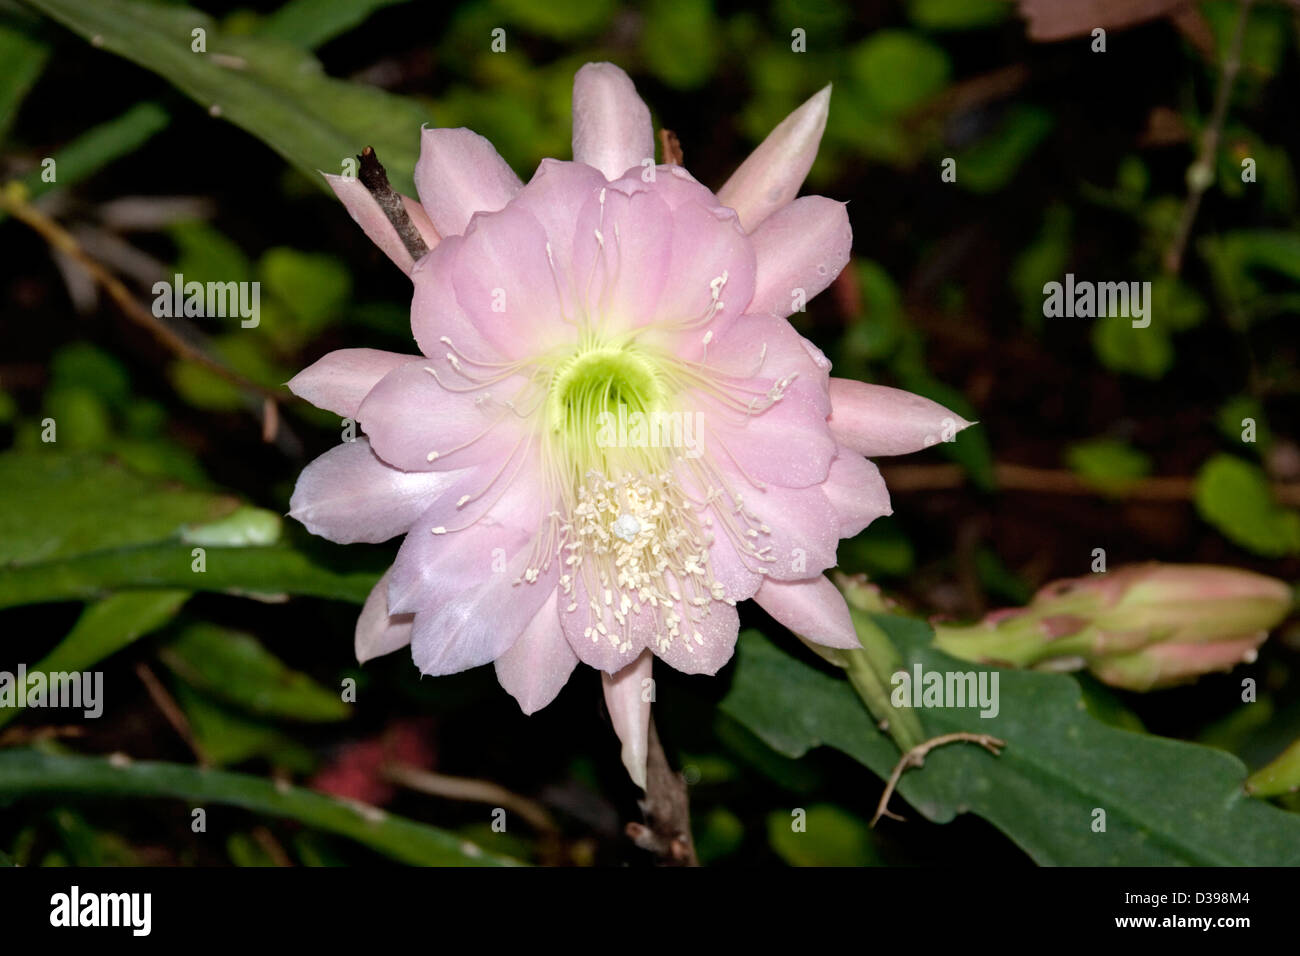 Blass rosa Blume, Knospe und flachen grünen Stängel von Epiphyllum Kakteen - Orchidee / Weihnachtskaktus Stockfoto